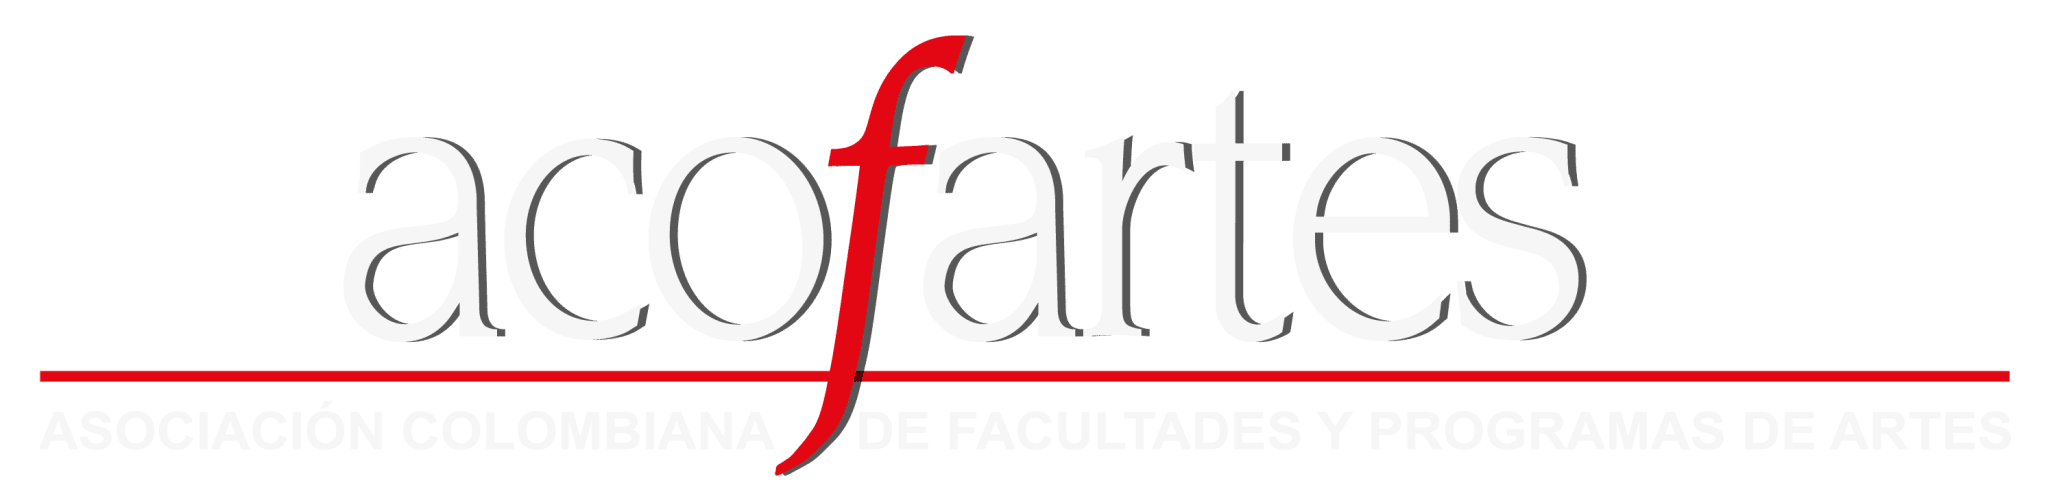 asociacion colombianas de facultades y programas de artes